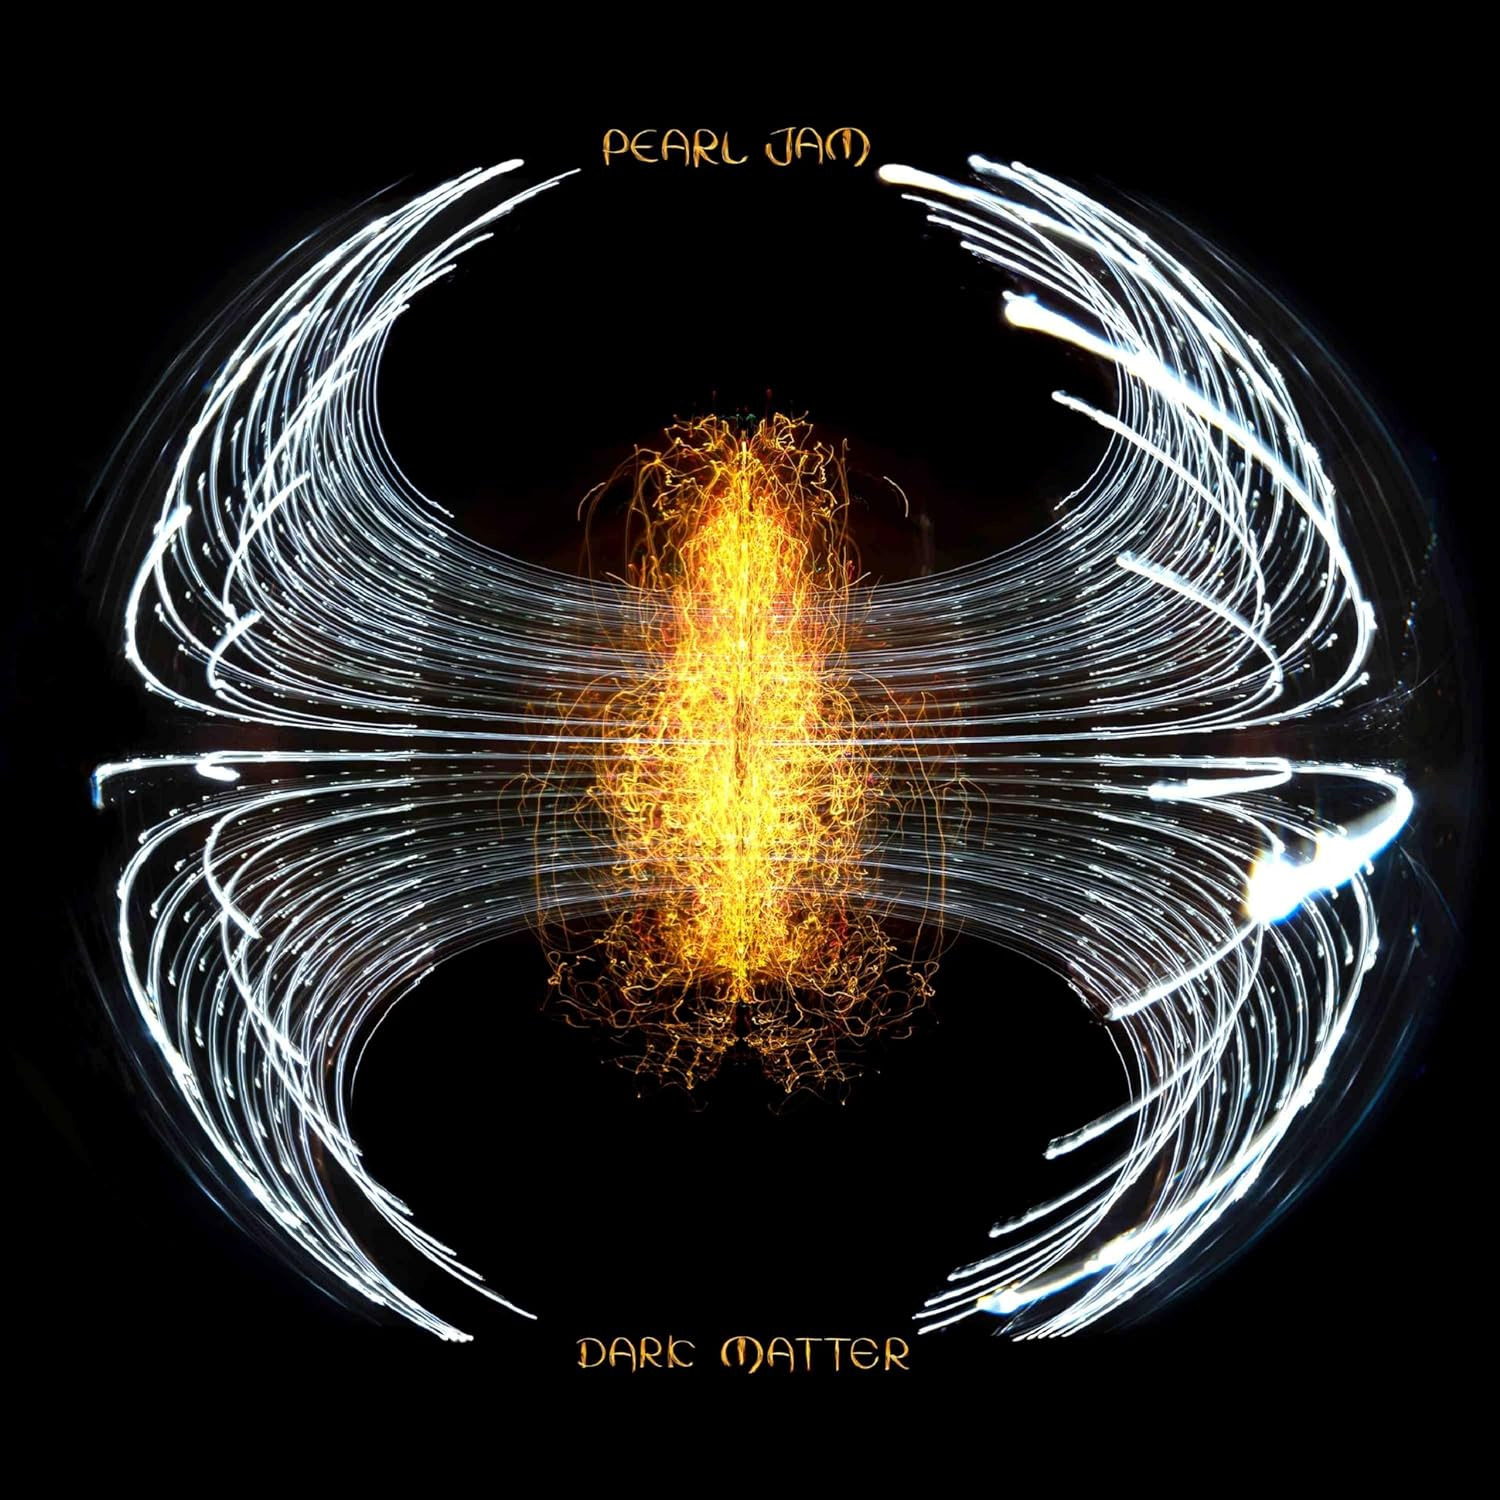 Pearl Jam, Dark Matter, CD